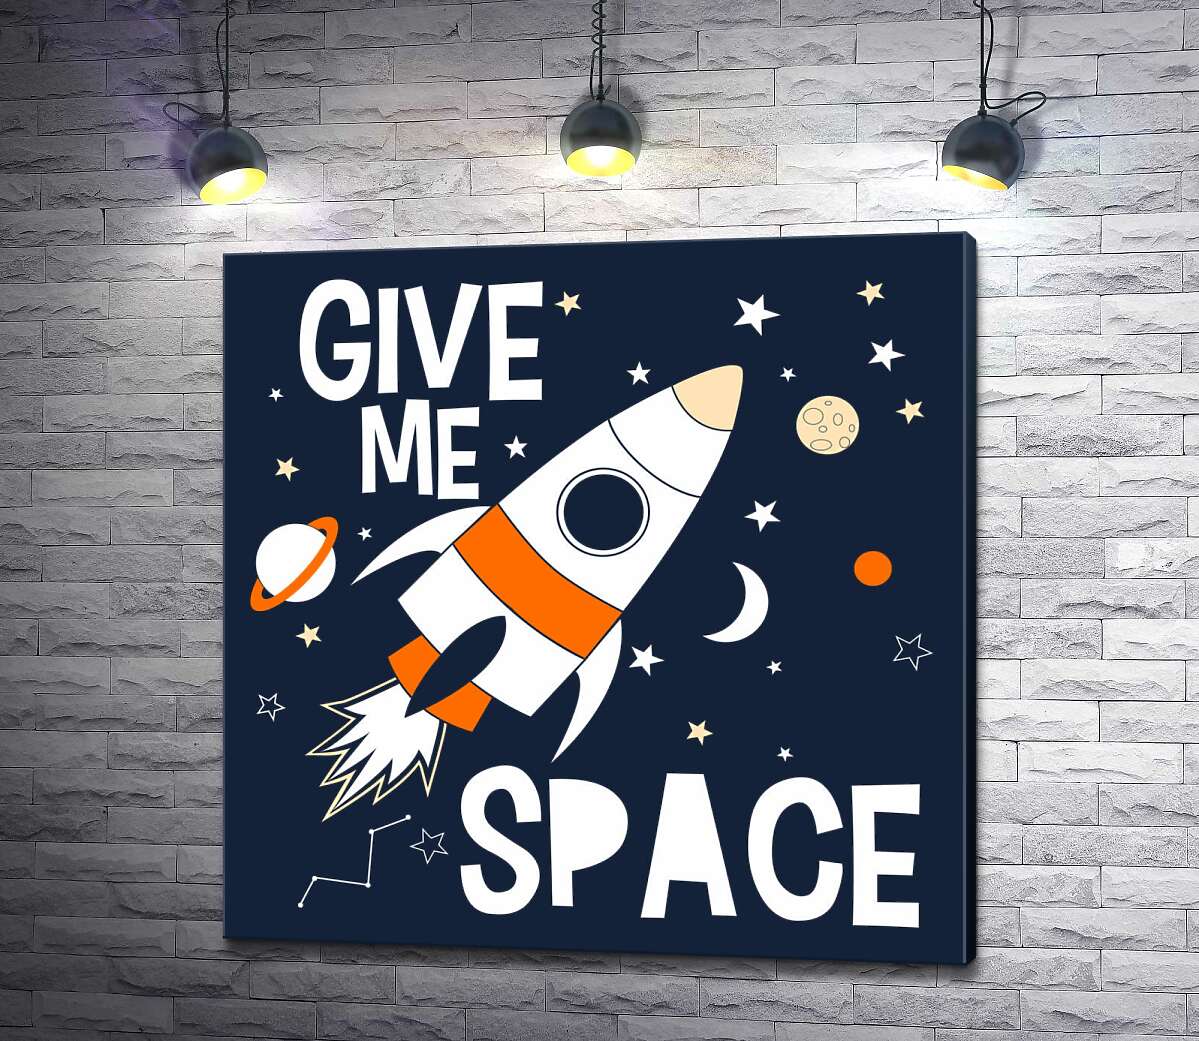 картина Ракета пролетает между словами "give me space"